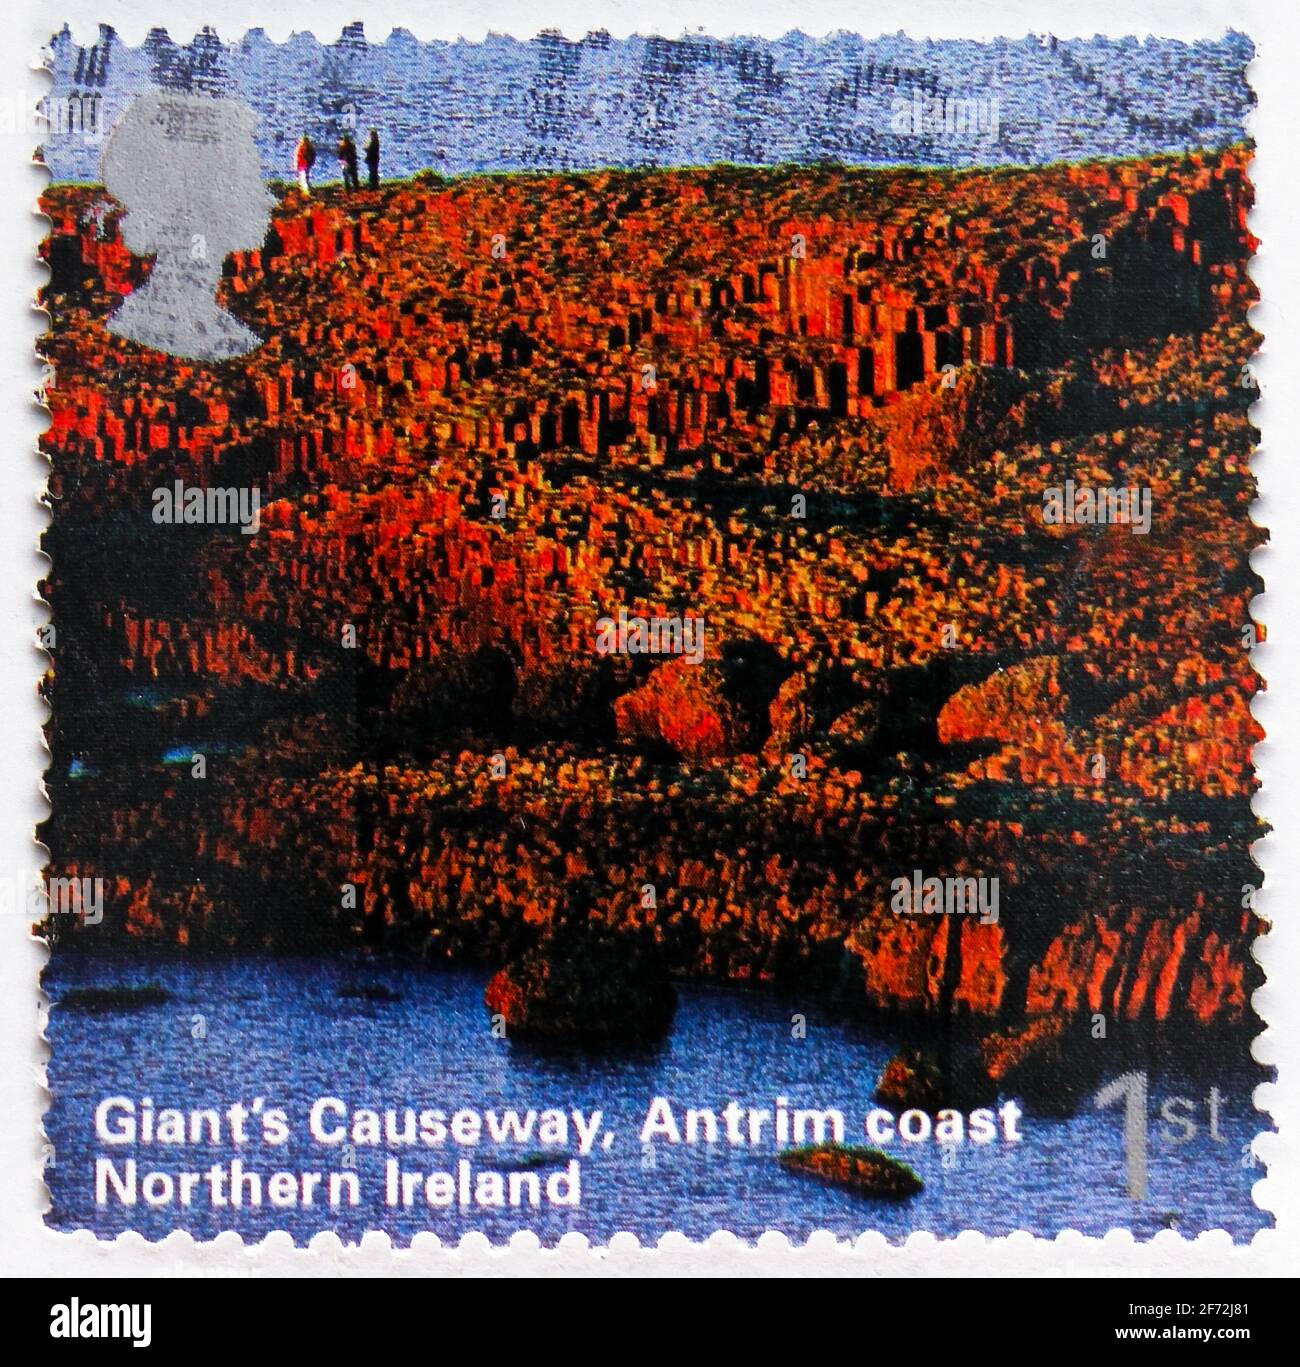 MOSCOU, RUSSIE - 22 DÉCEMBRE 2020 : timbre-poste imprimé au Royaume-Uni montre la chaussée des géants, la côte d'Antrim, UN voyage britannique - Irlande du Nord Banque D'Images